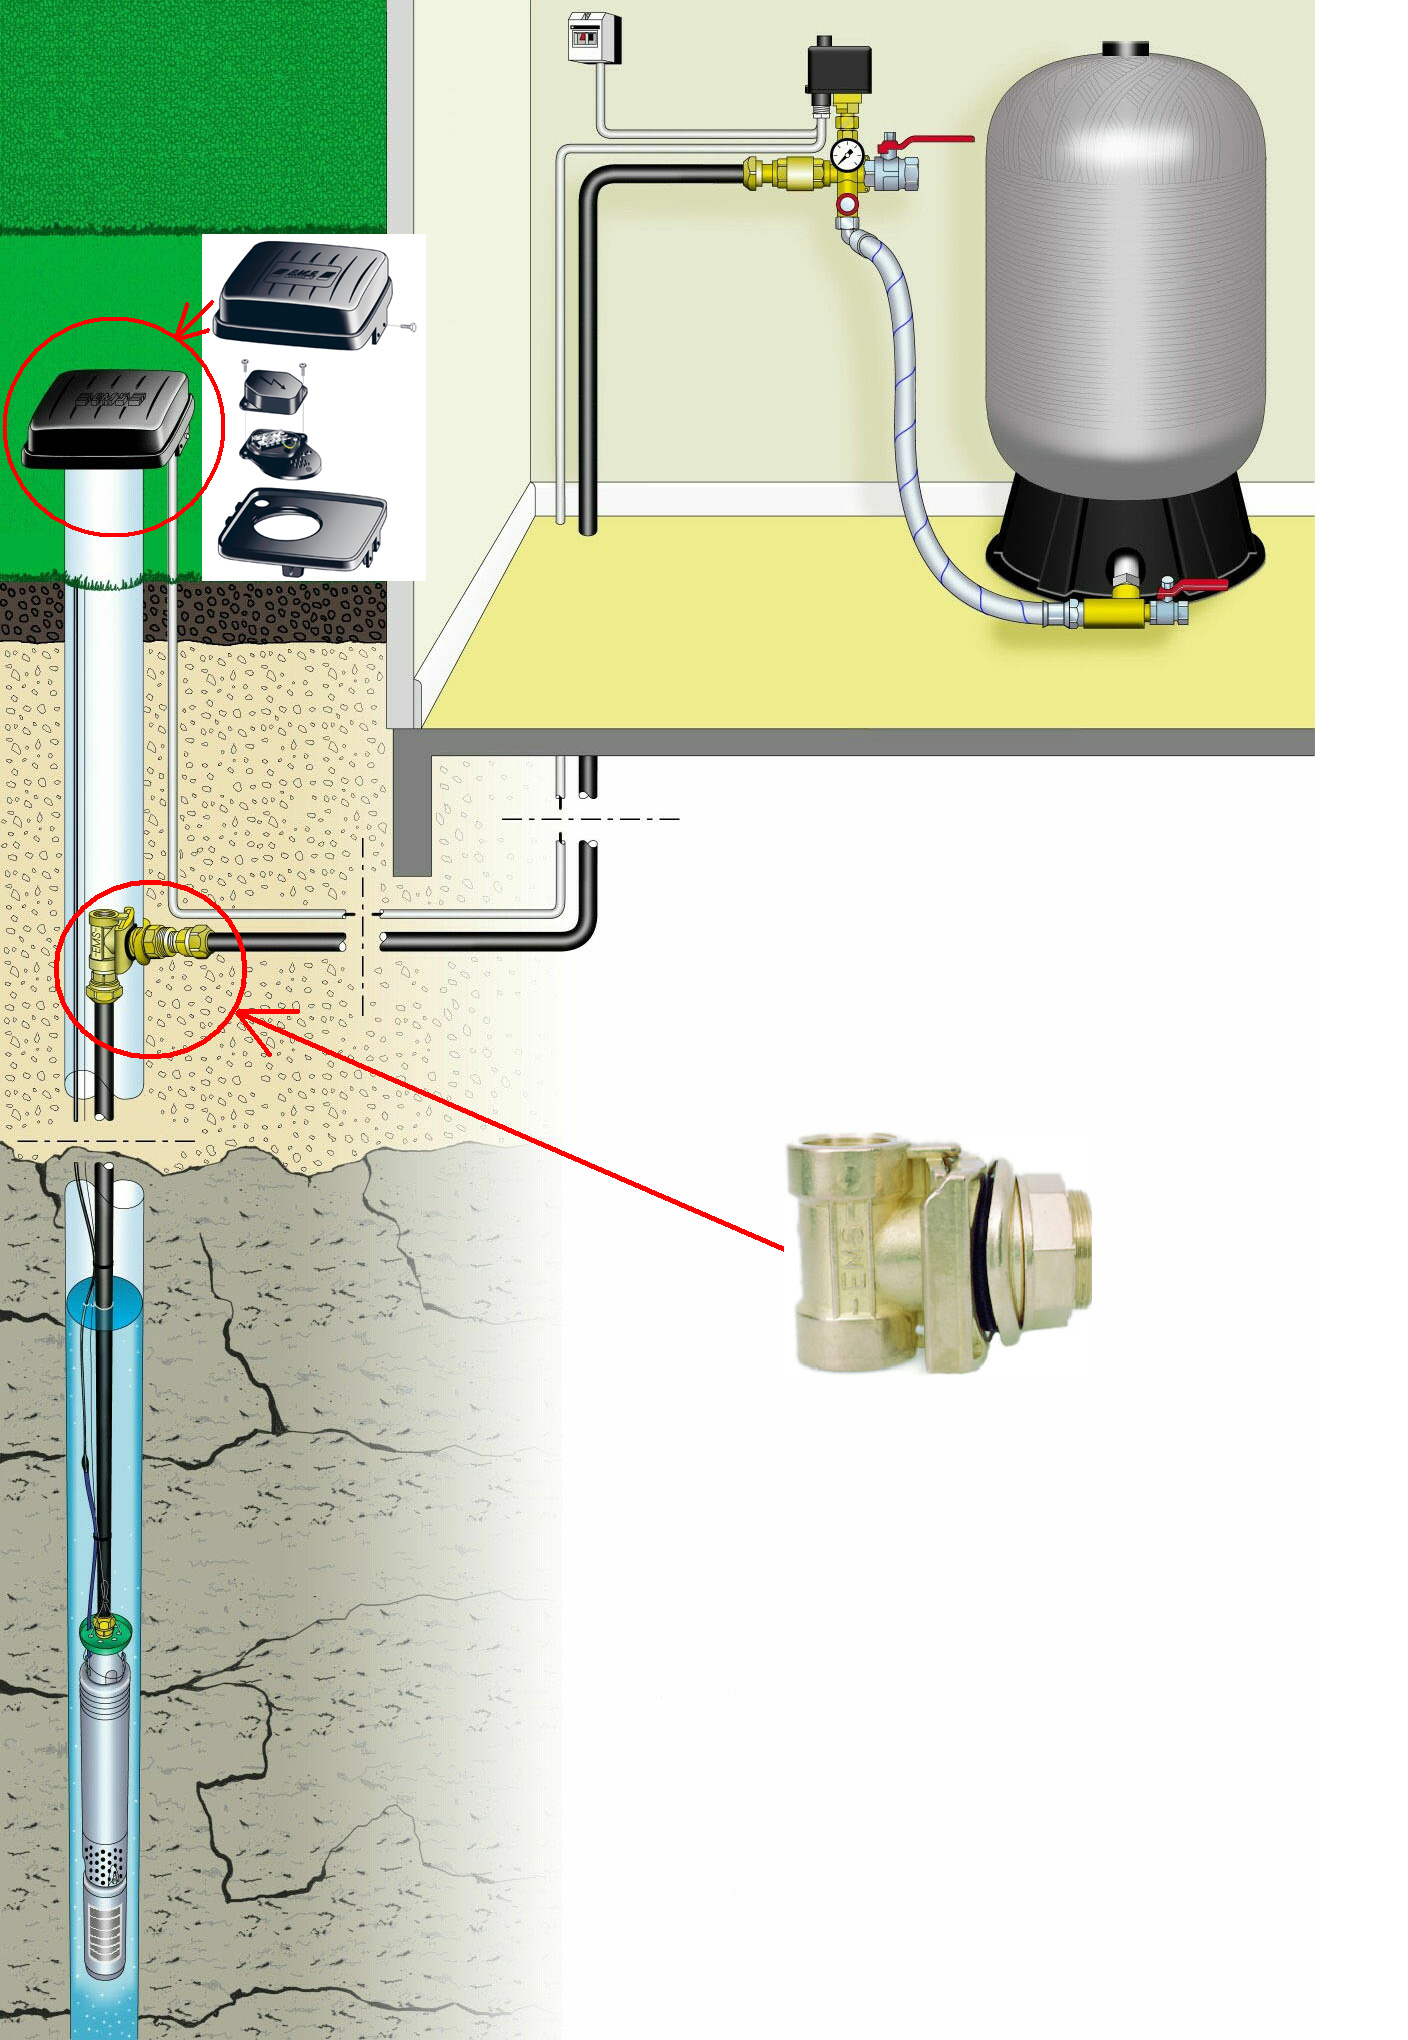 schemat podłączenia hydroforu i wyłącznika ciśnieniowego